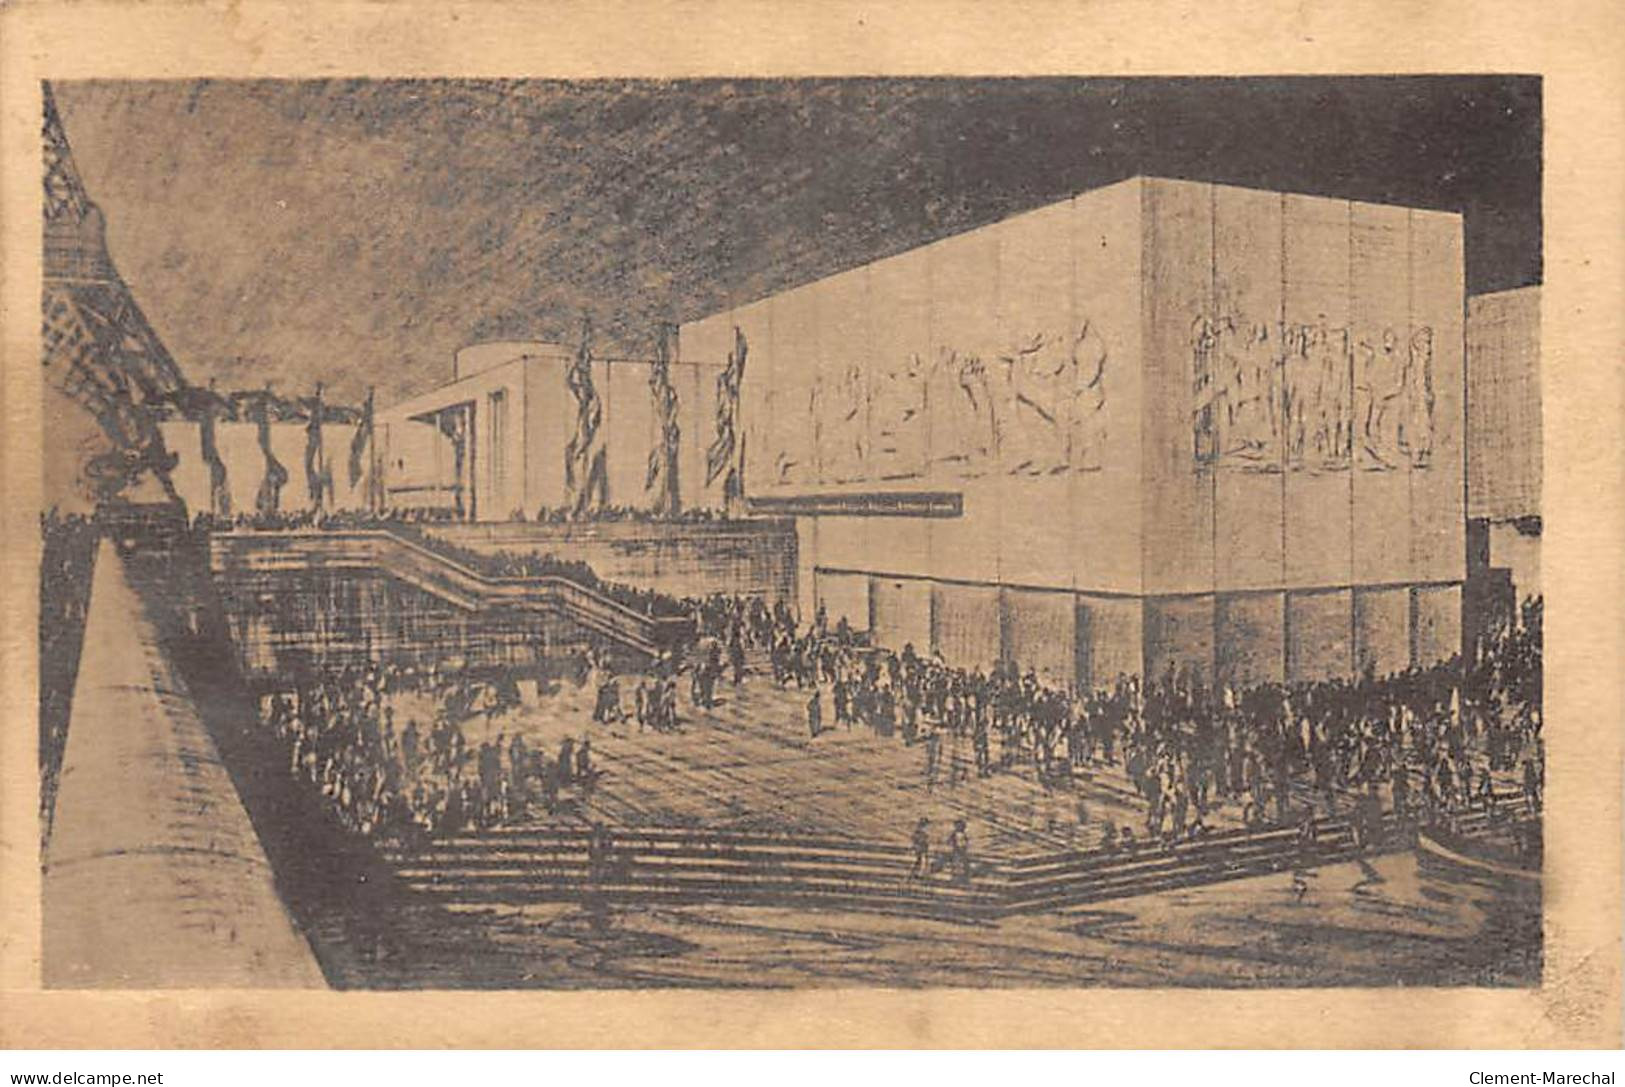 PARIS - Exposition Internationale 1937 - Pavillon De La Grande Bretagne - Très Bon état - Expositions